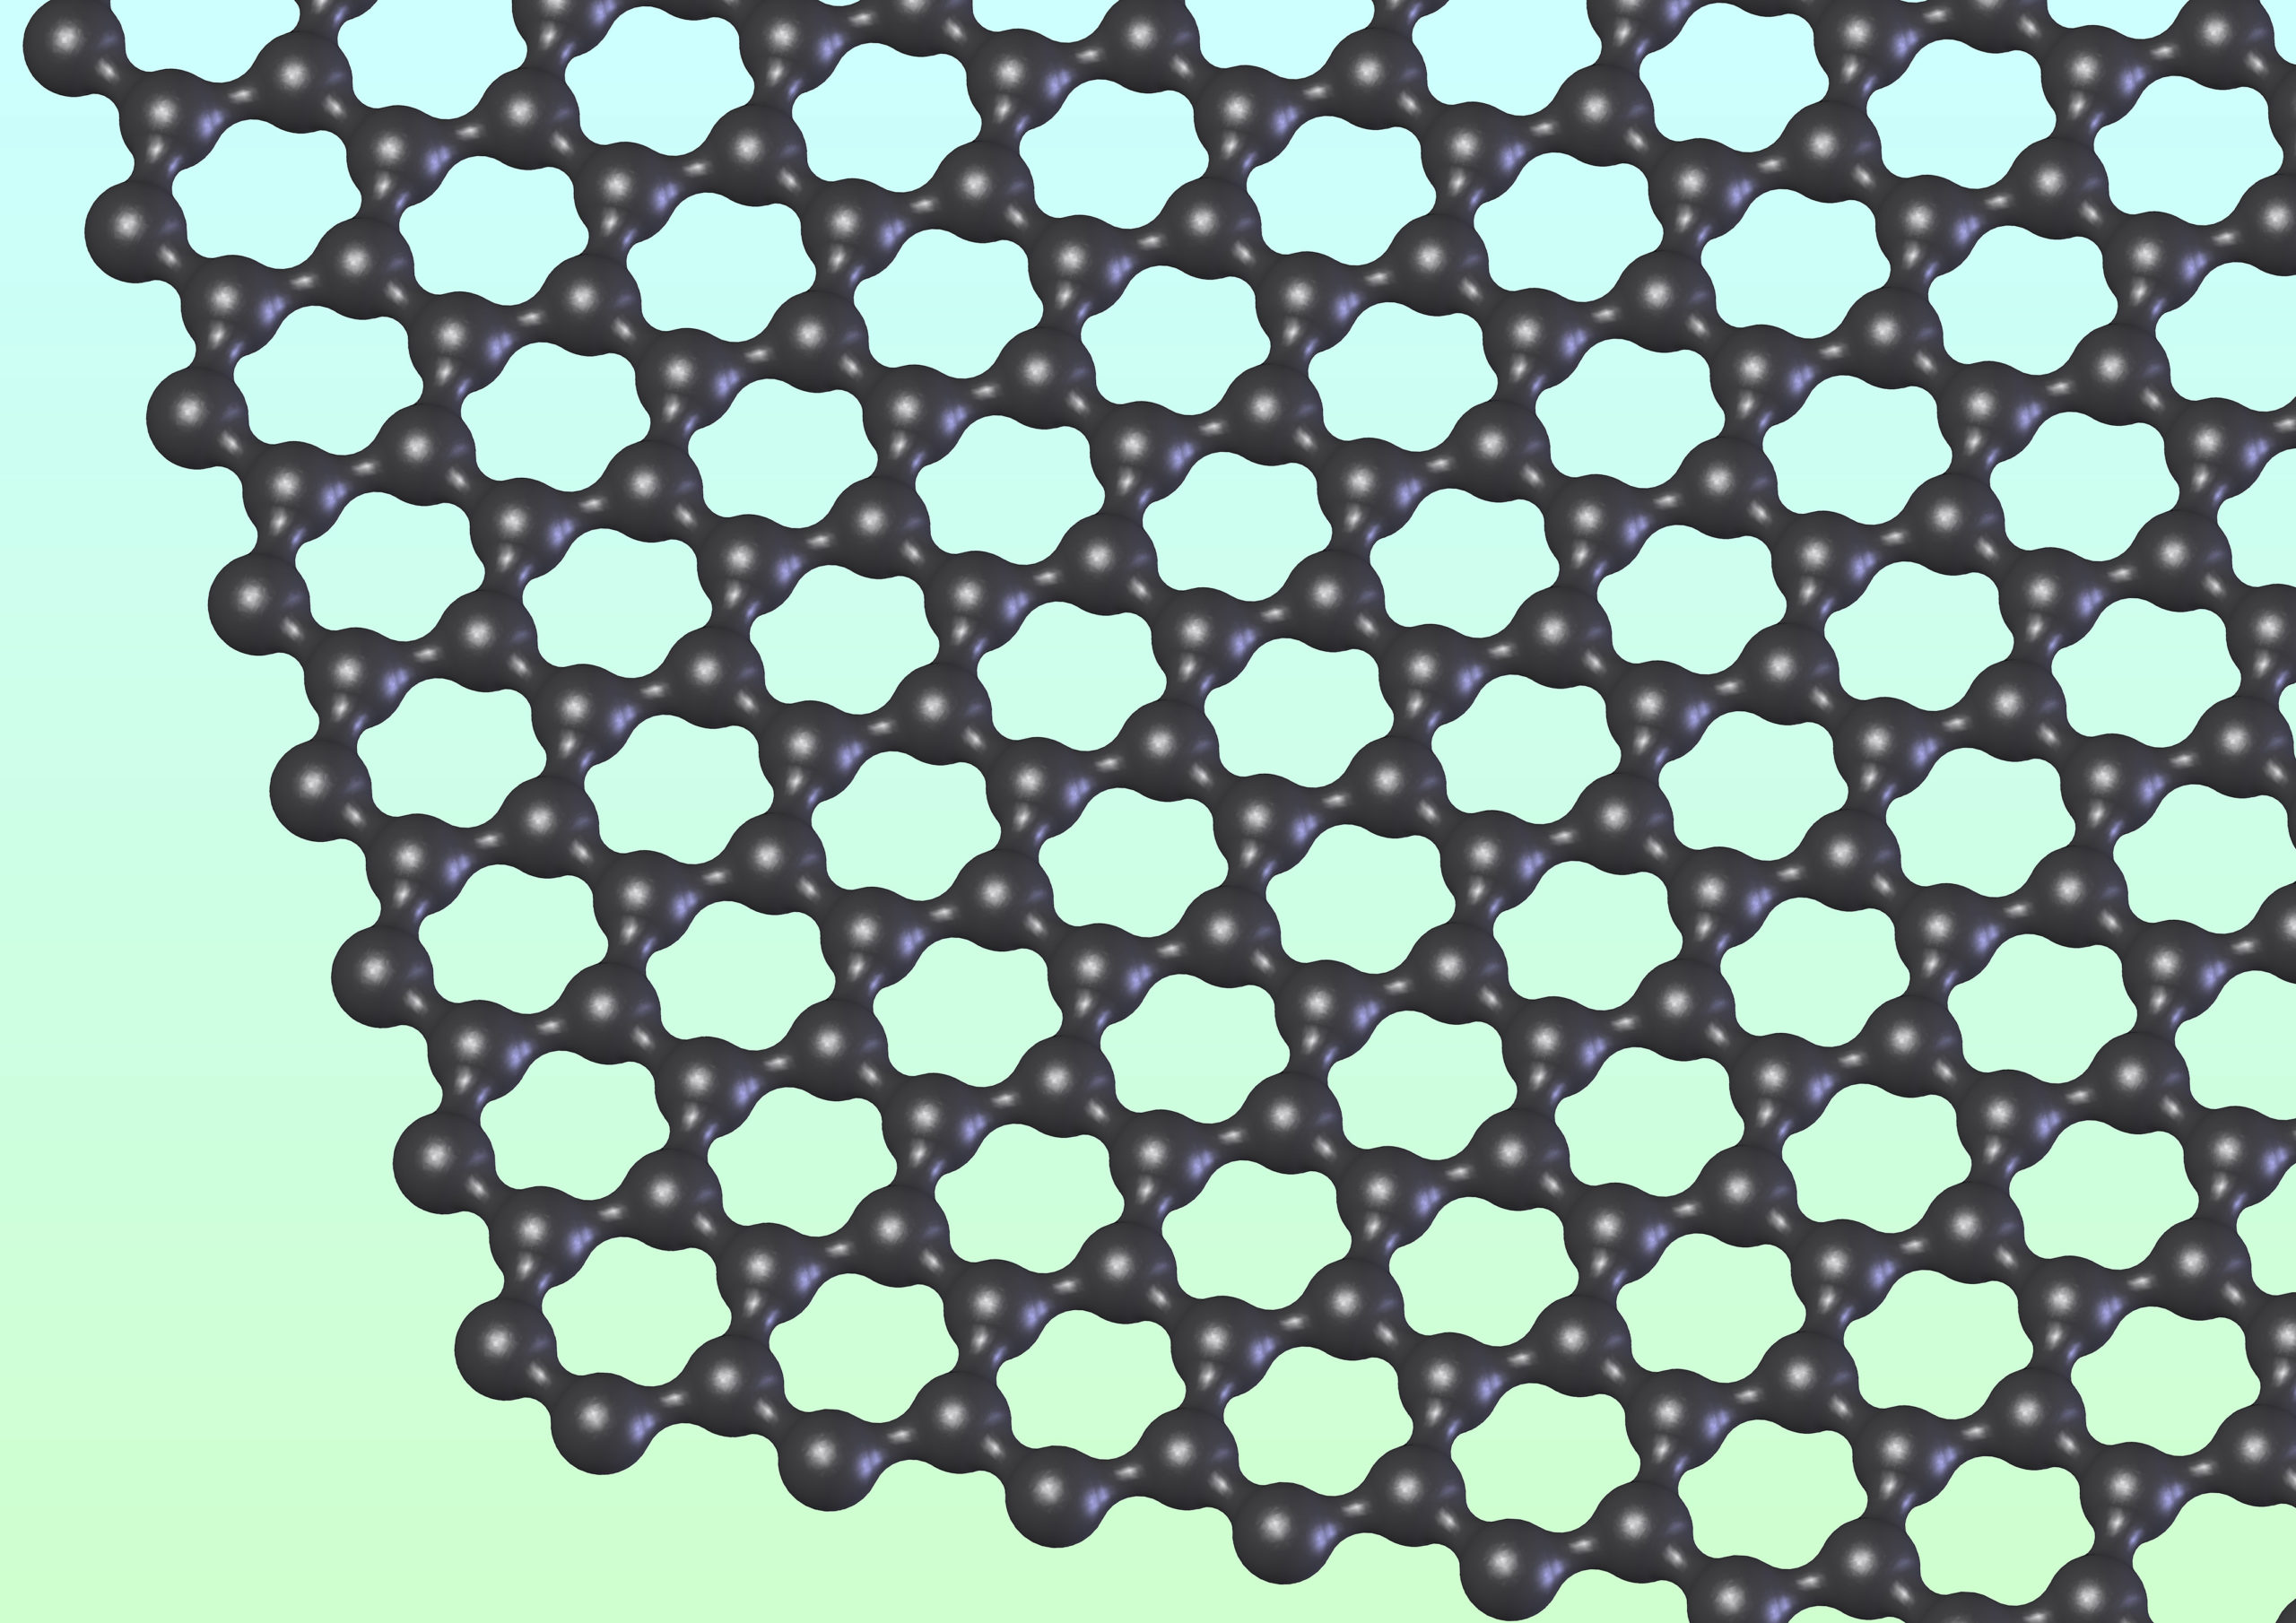 Гексагональная решетка графена